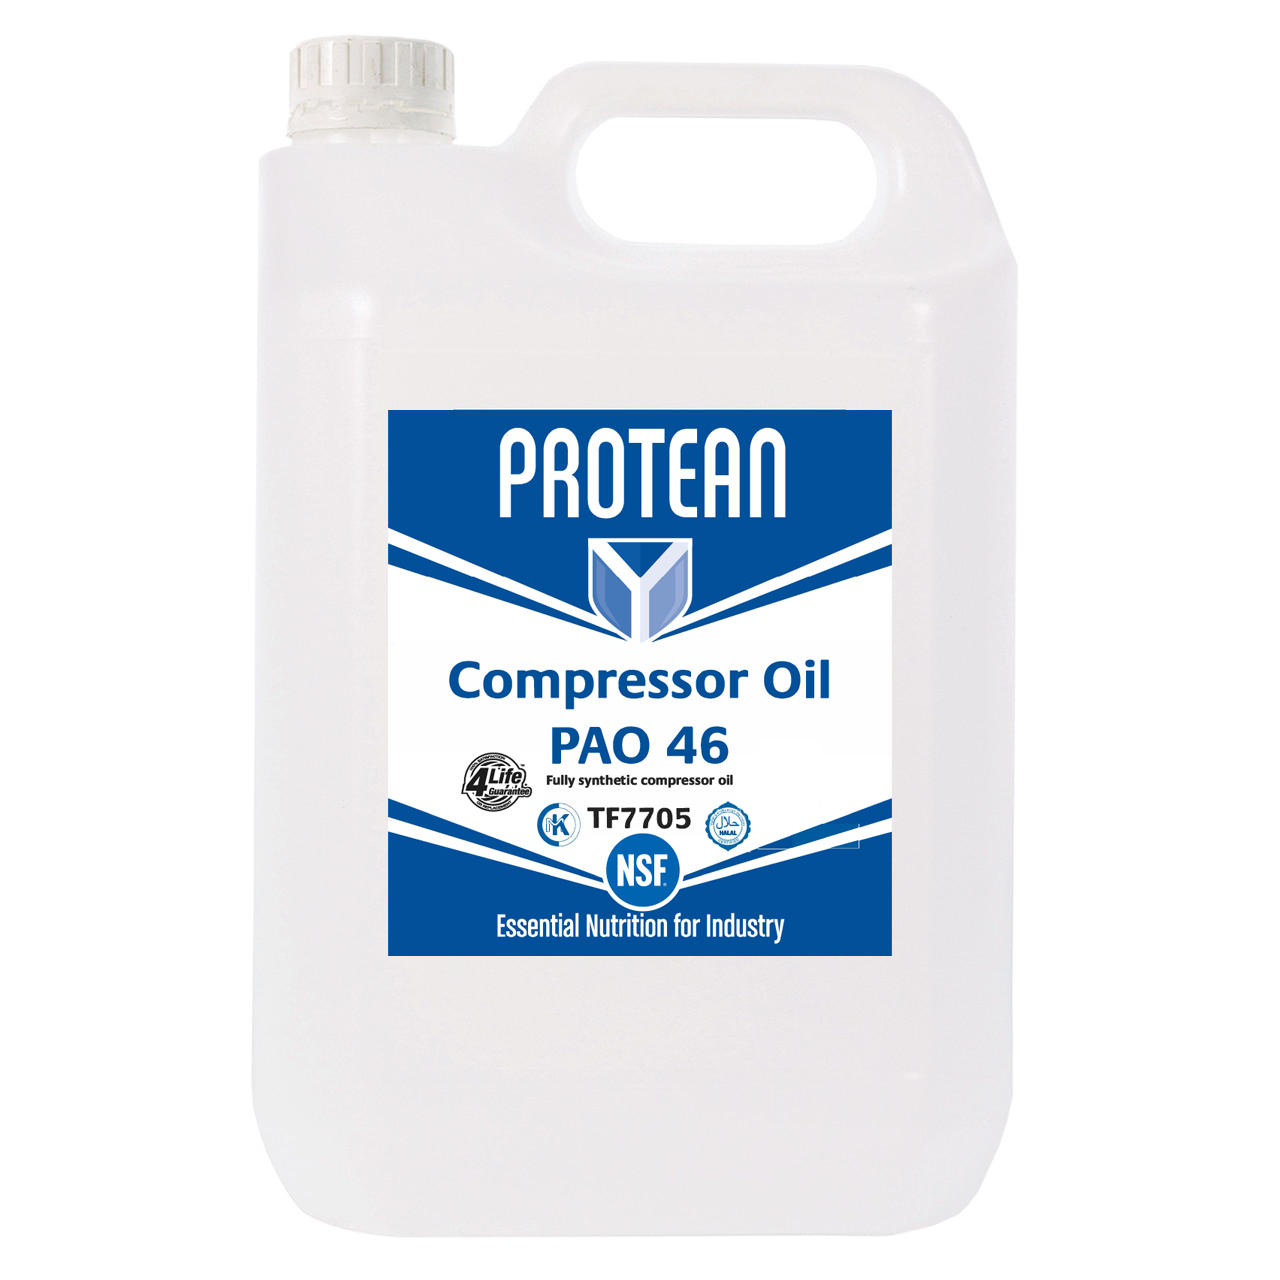 PROTEAN Compressor Oil PAO 46 5L - TF7705 - Box of 4